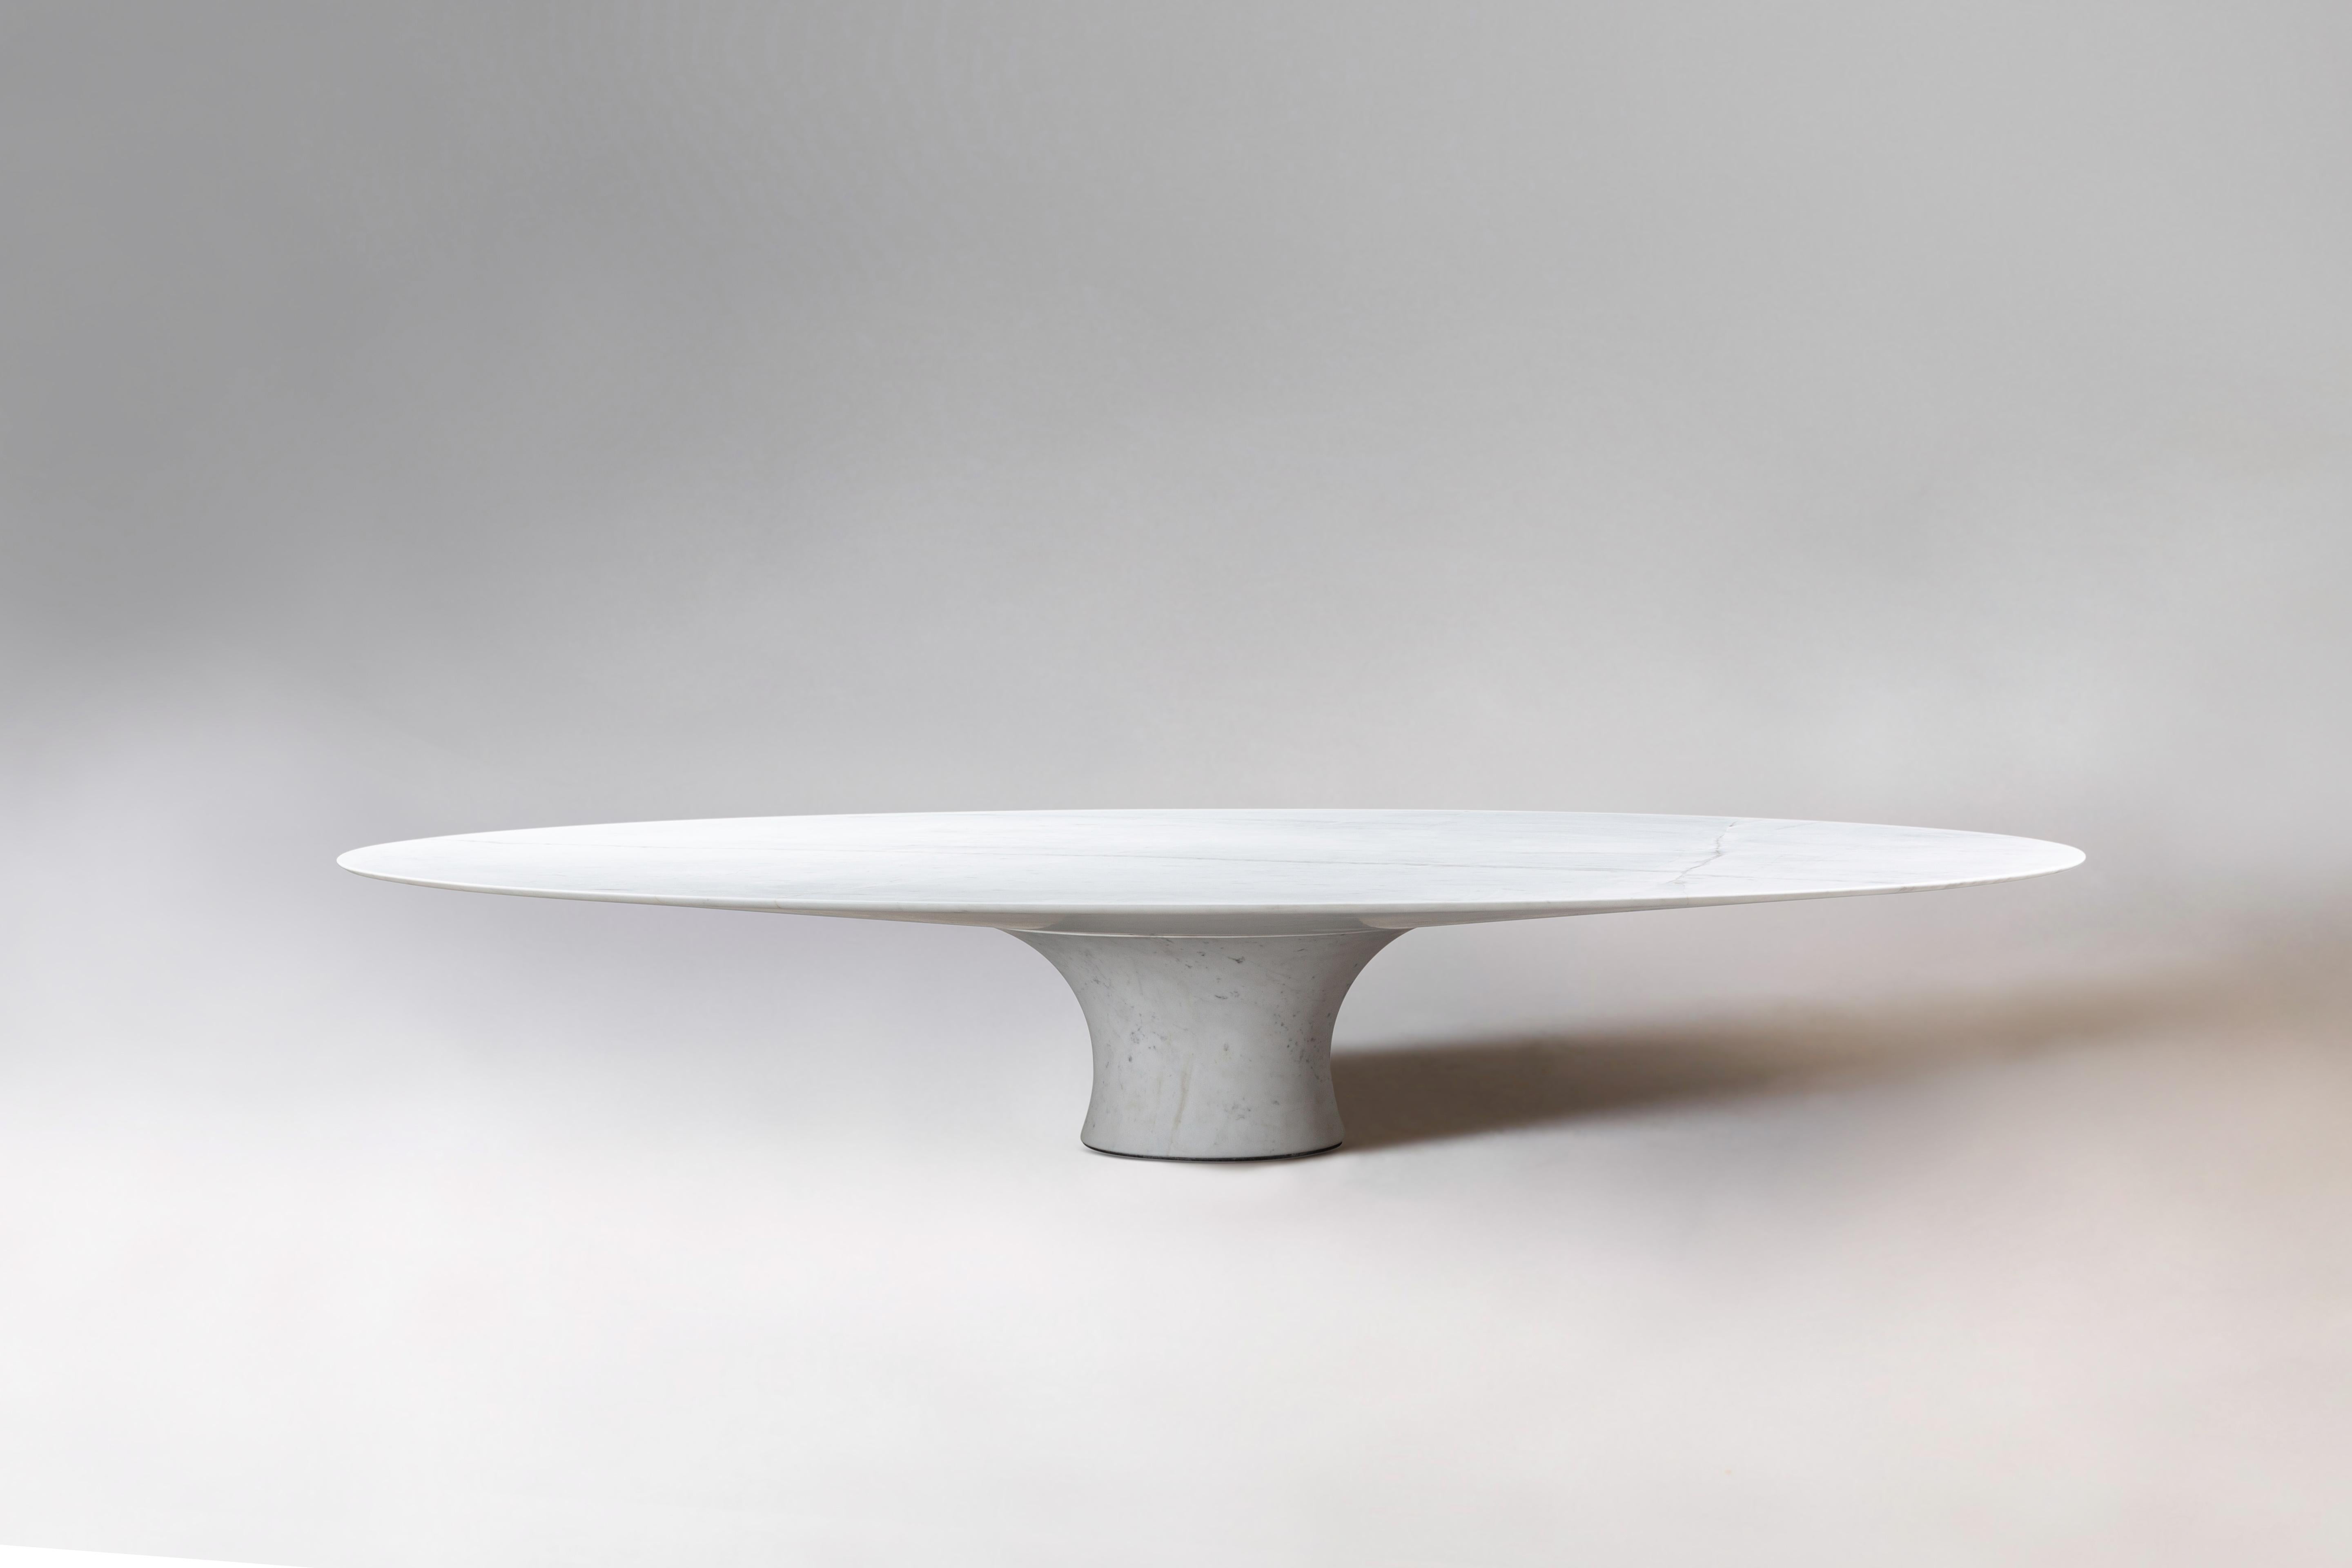 Table ovale en marbre contemporain raffiné Kyknos 210 / 75
Dimensions : 210 x 75 cm : 210 x 75 cm
MATERIAL : Marbre Kynos

Angelo est l'essence même d'une table ronde en pierre naturelle, une forme sculpturale dans un matériau robuste aux lignes